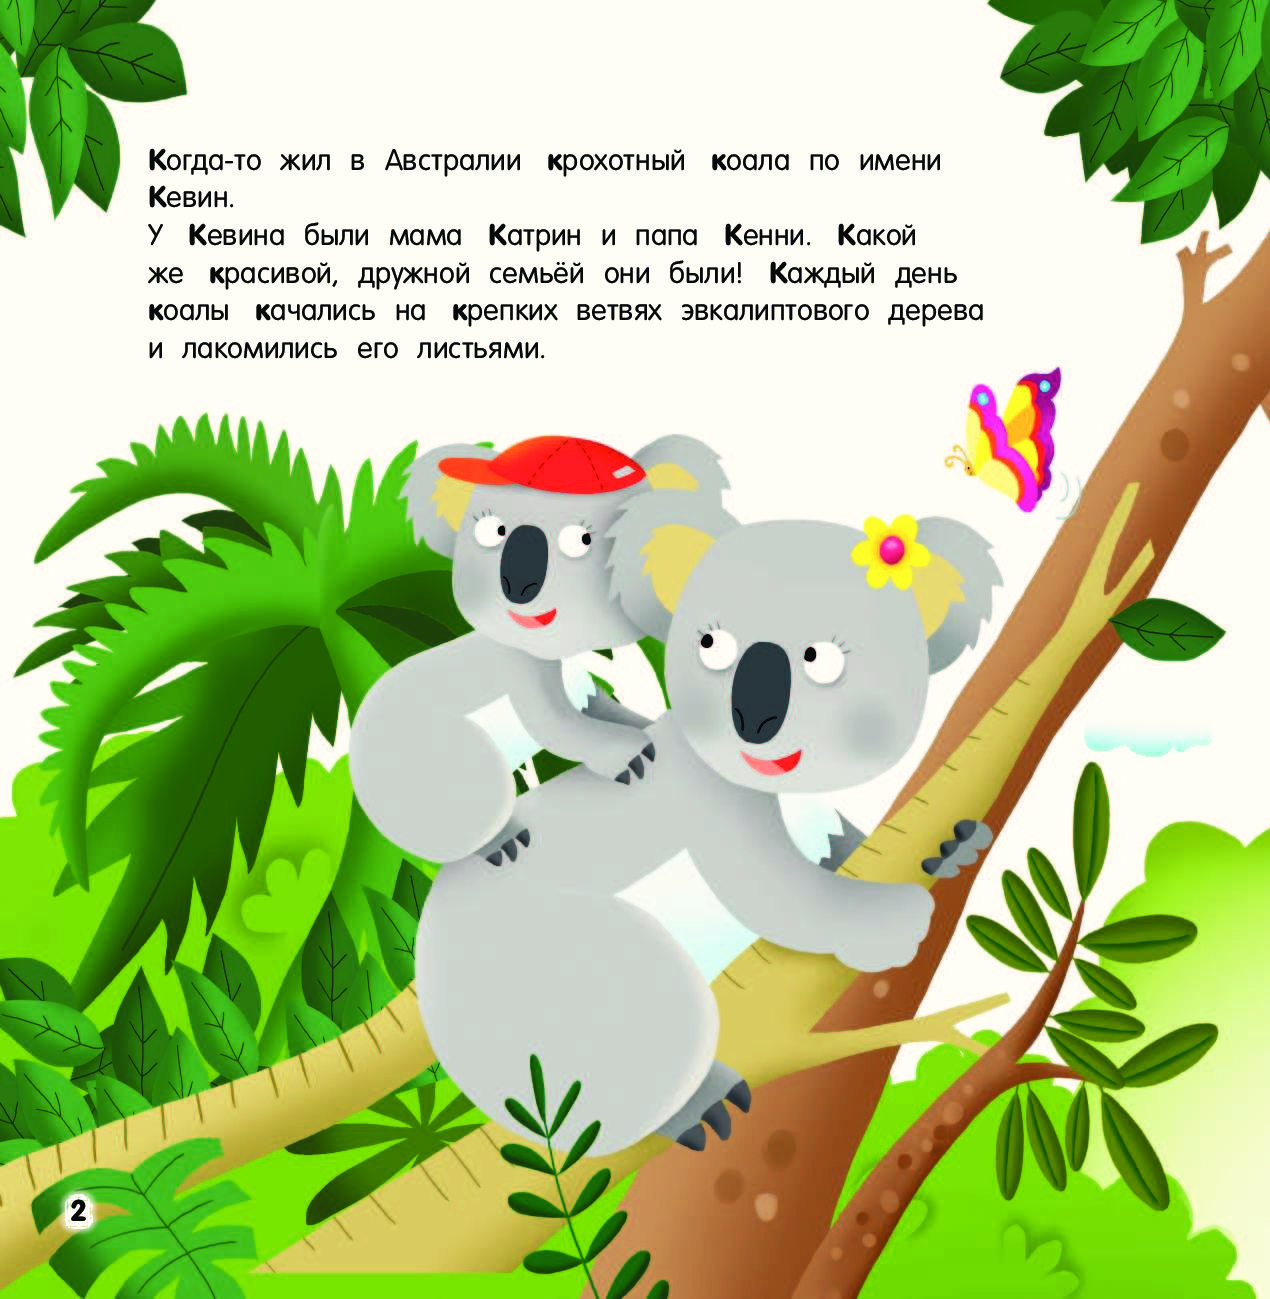 Книга коала. Задания для дошкольников коала. Пальчиковая гимнастика про коалу. Лабиринт коала. Буква к - коала.